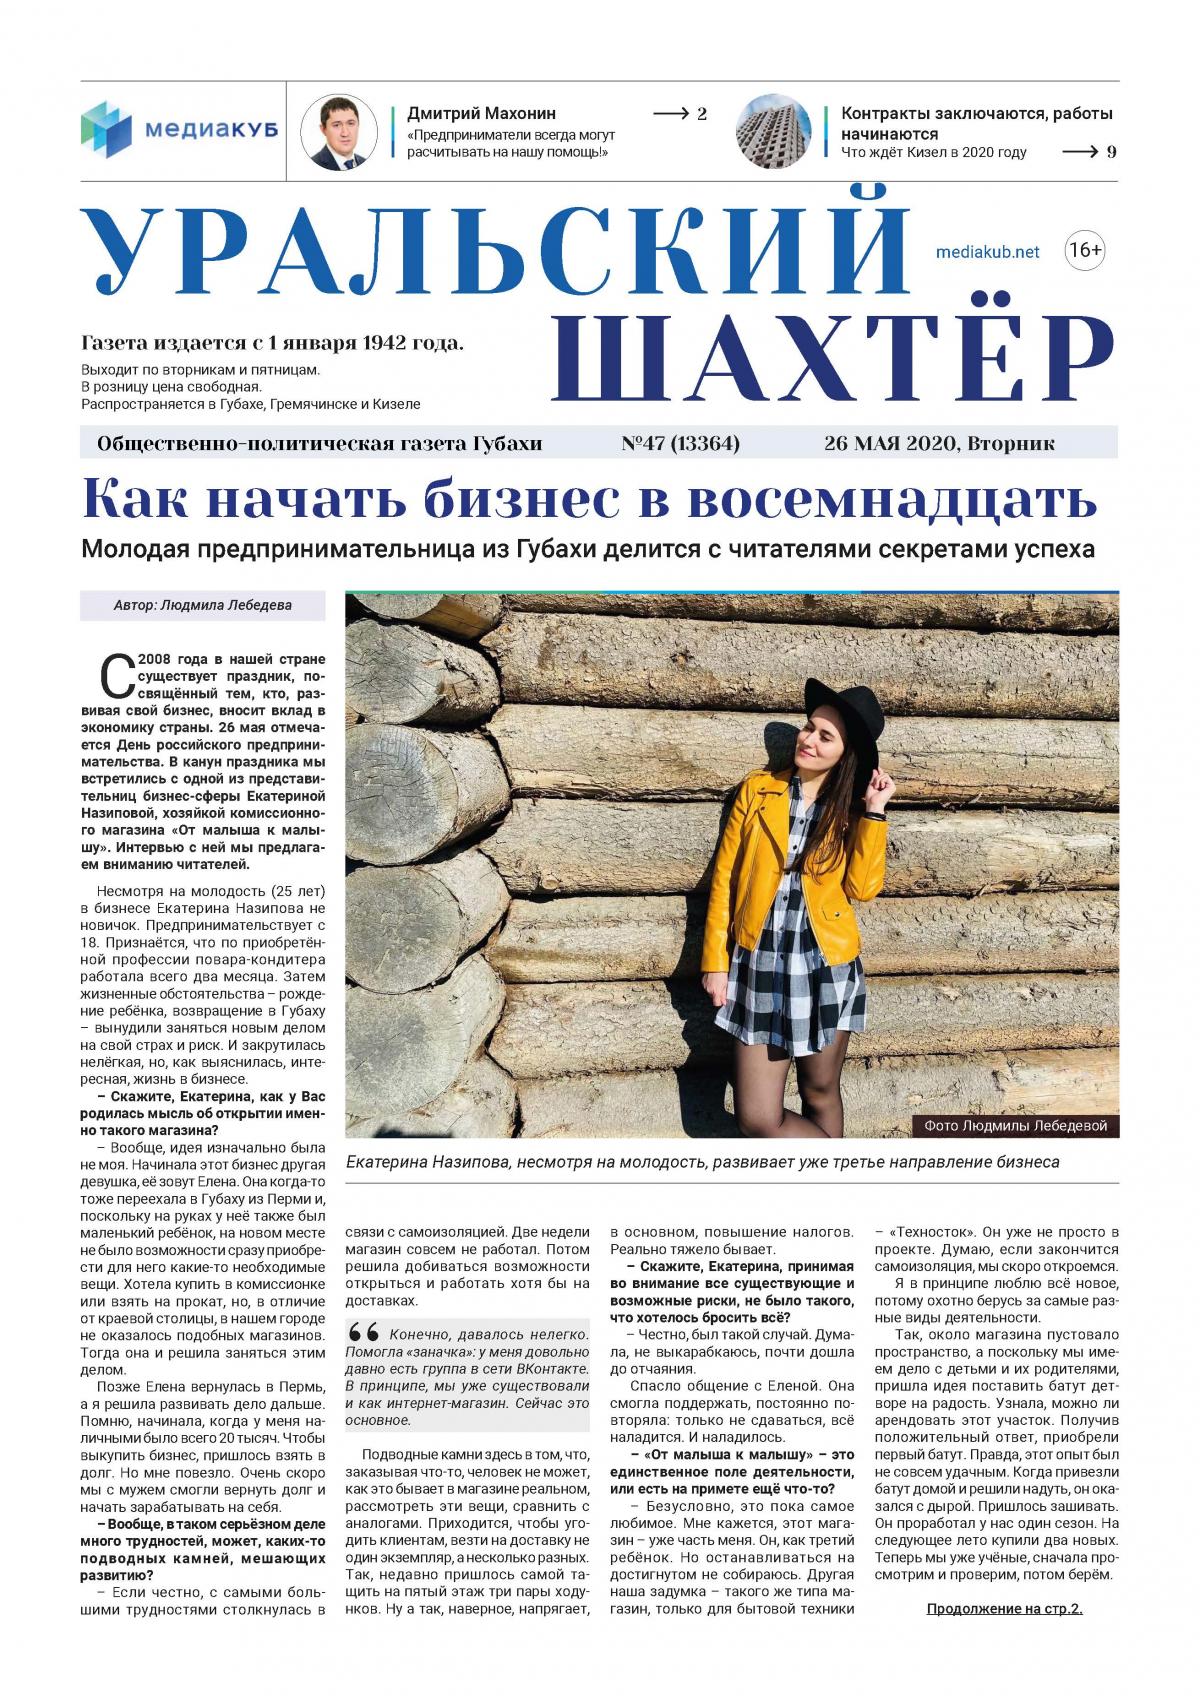 Разработан новый дизайн газеты "Уральский Шахтёр"